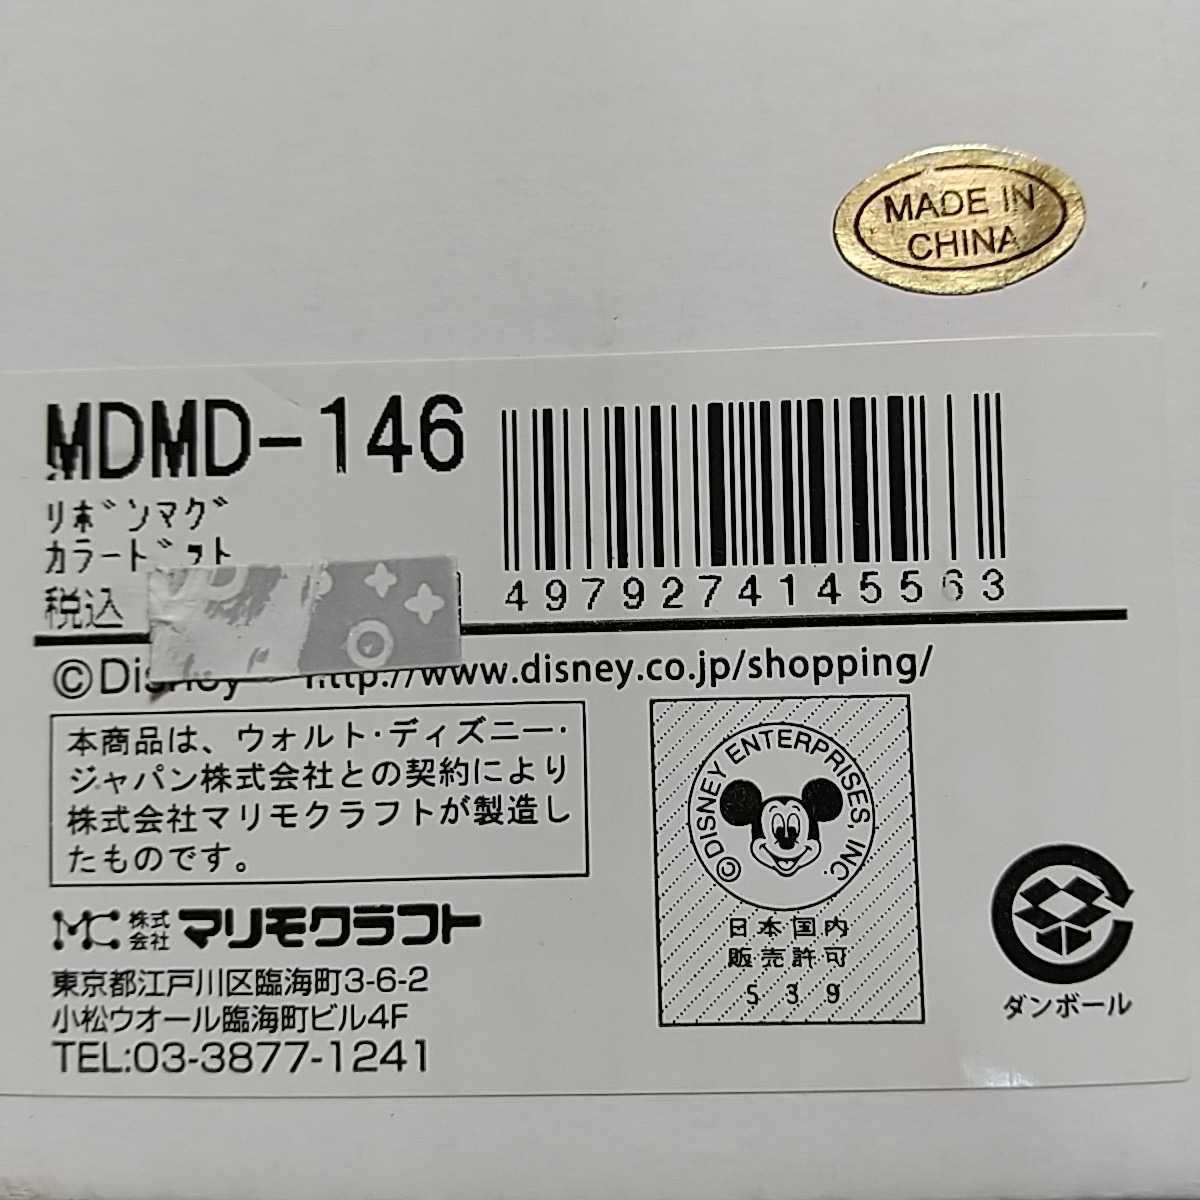 ミニー リボンマグ カラードット MDMD-146 マリモクラフト カラフル ミニーマウス コップ ミッキーマウス マグカップ